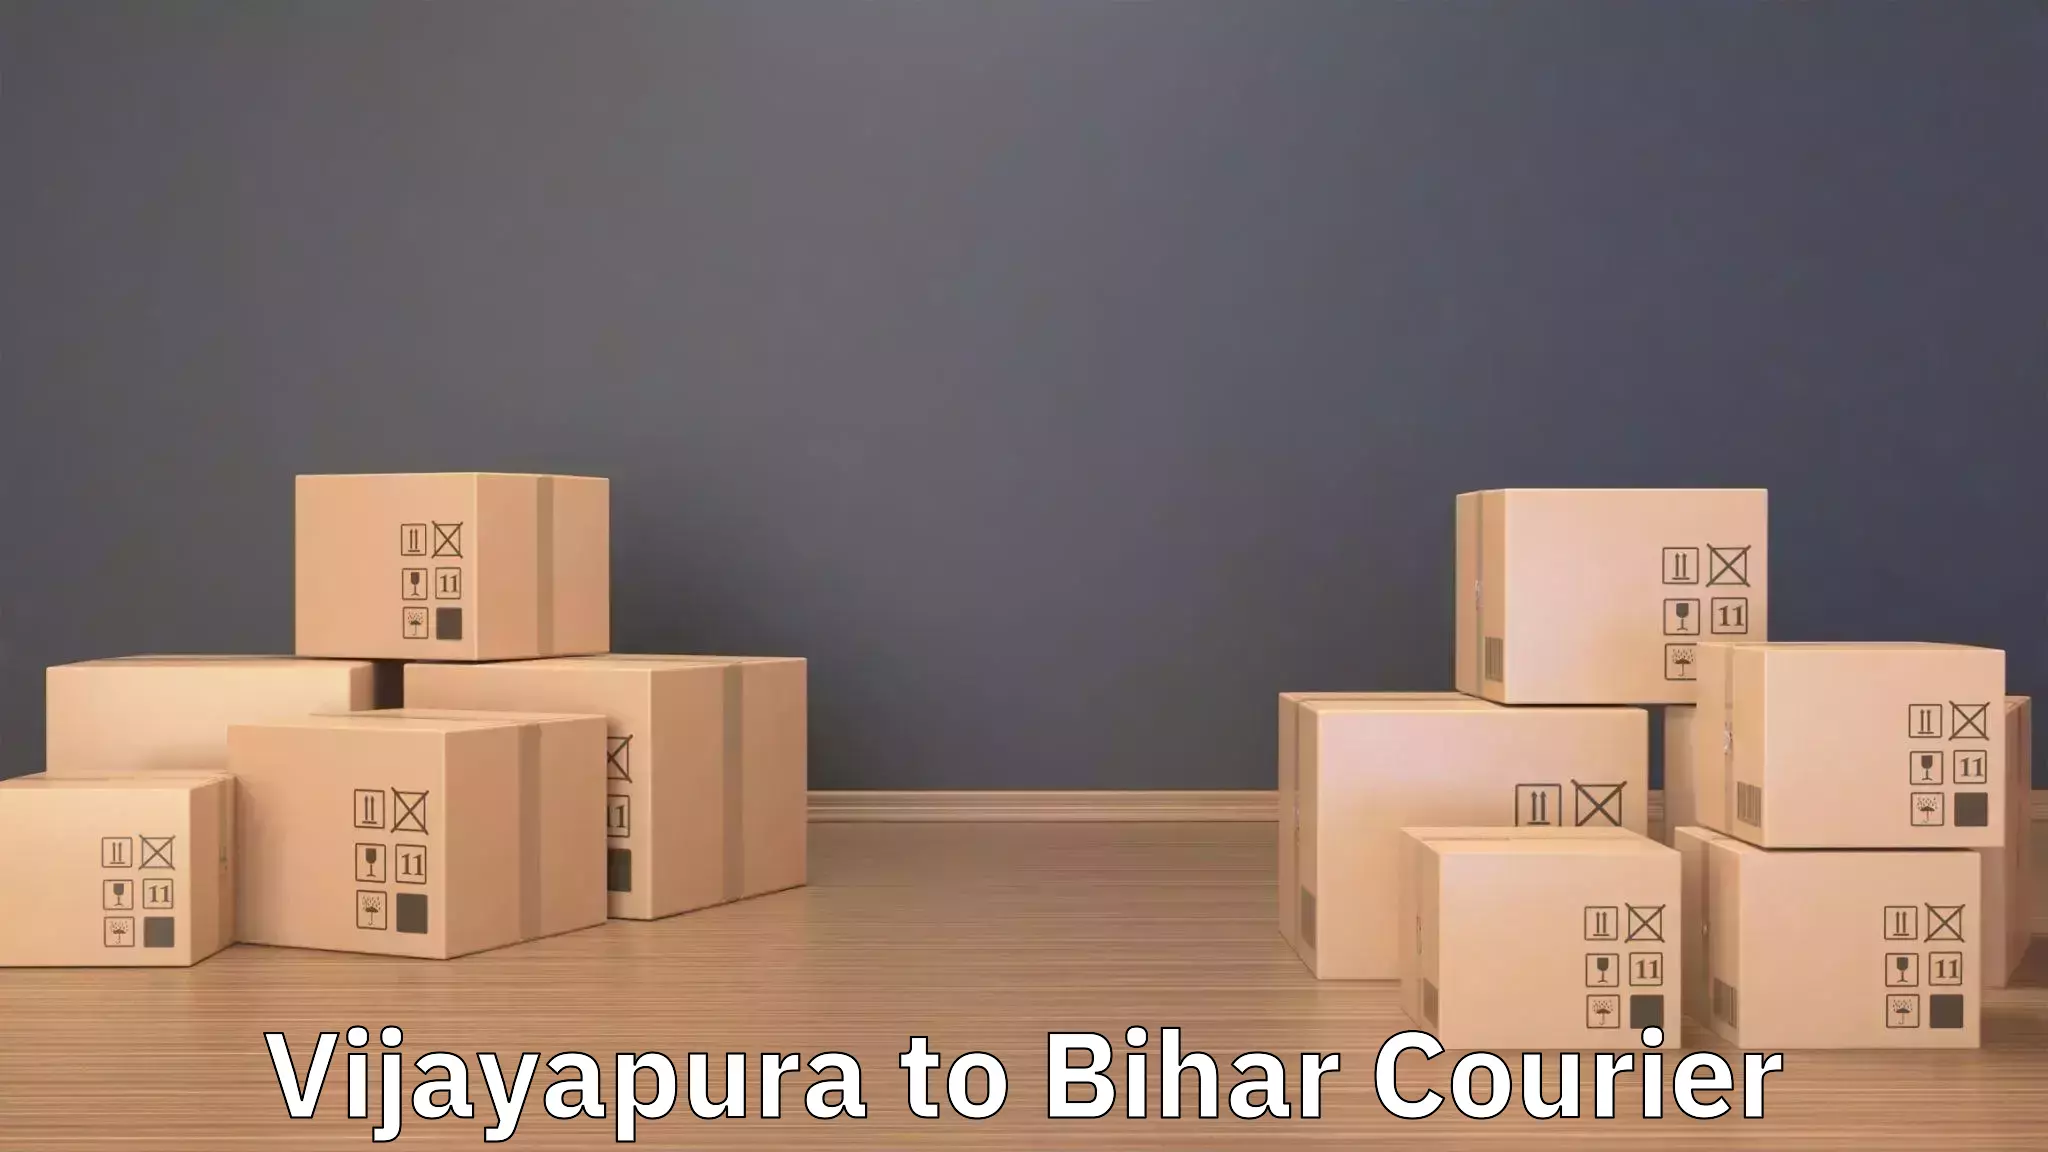 Professional furniture movers Vijayapura to Jagdishpur Bhojpur